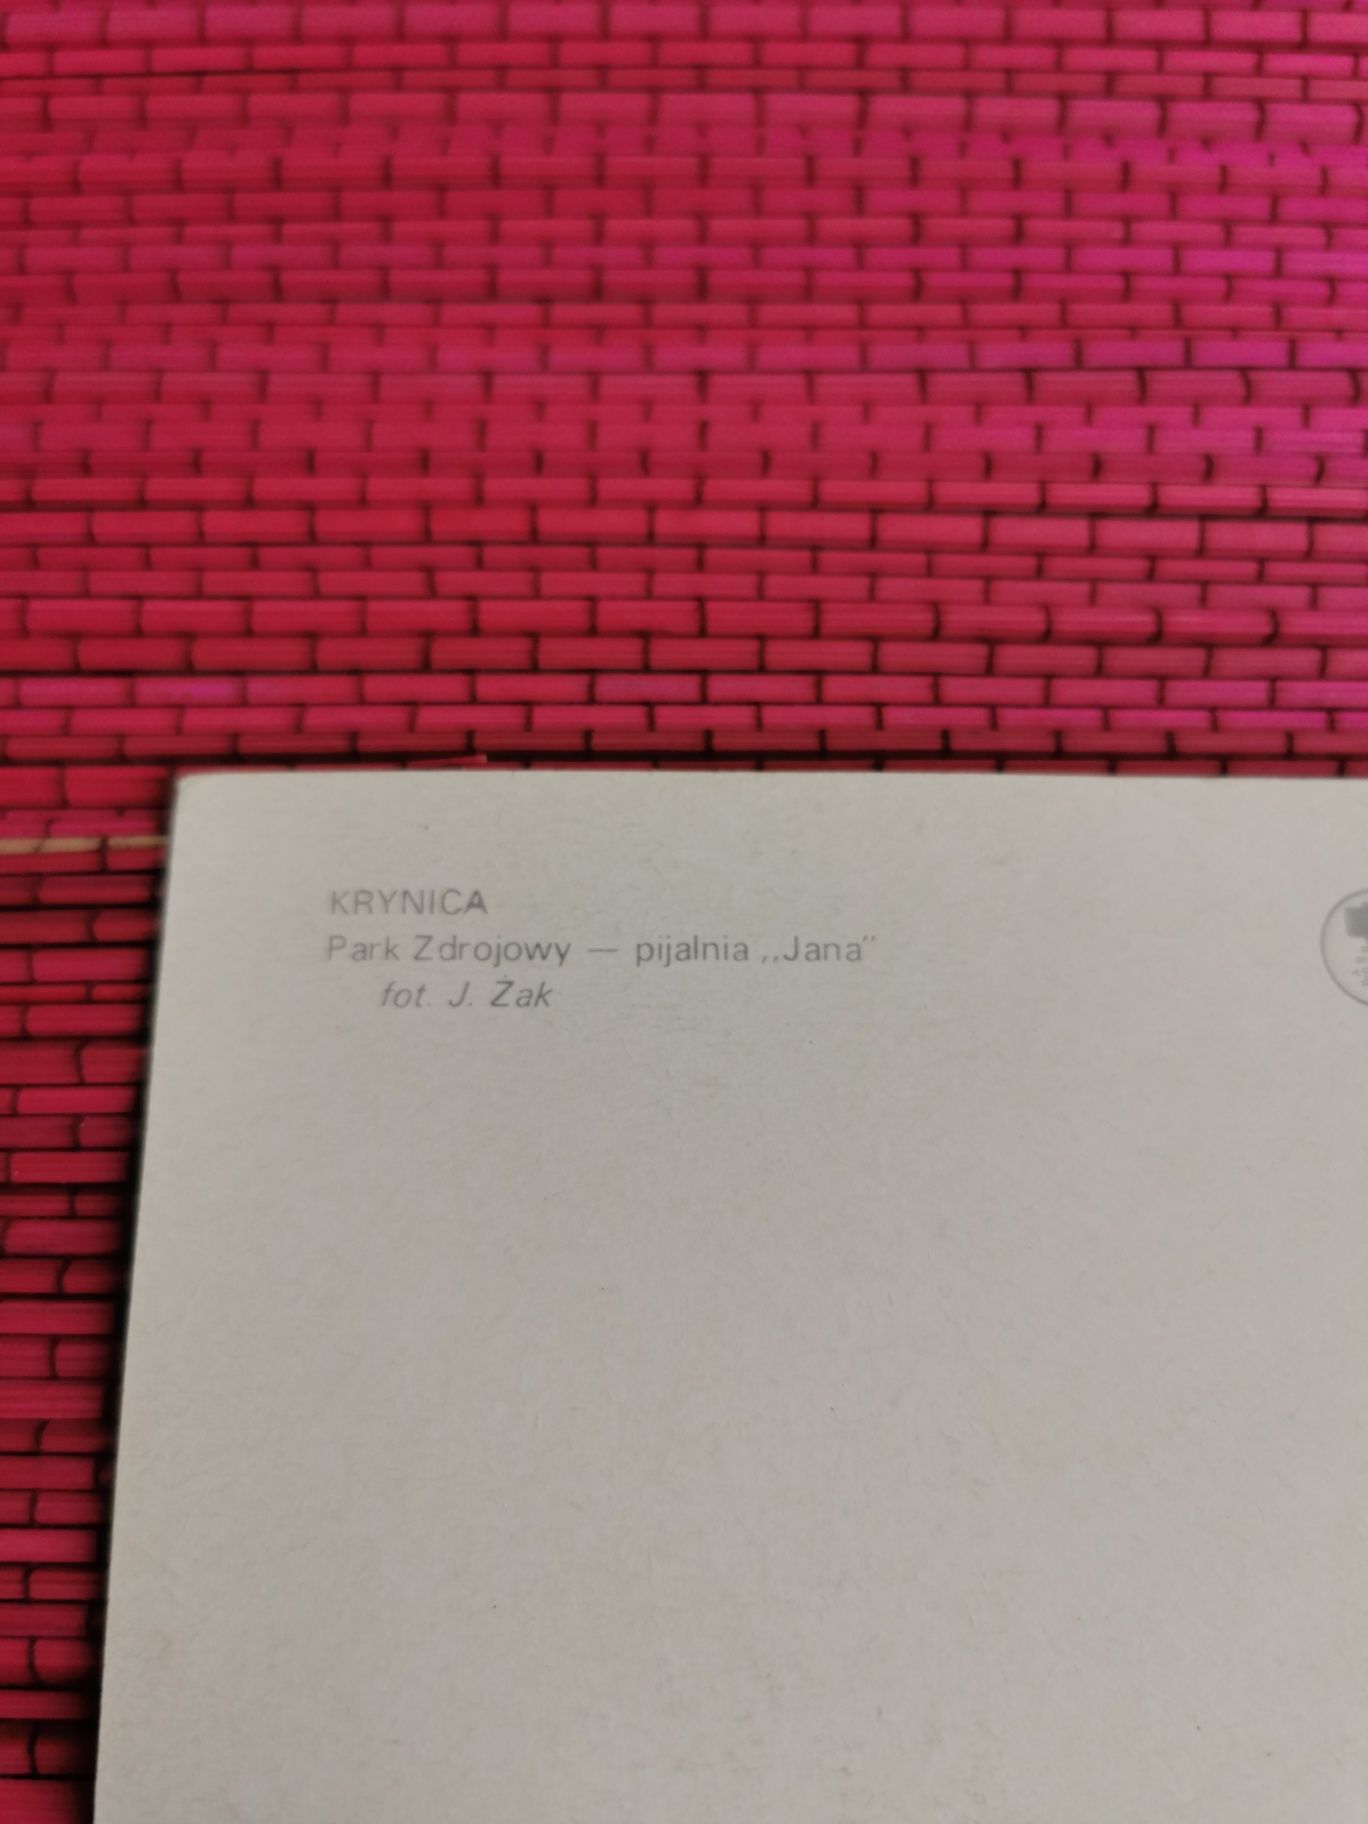 Pocztówka Krynica lata 80